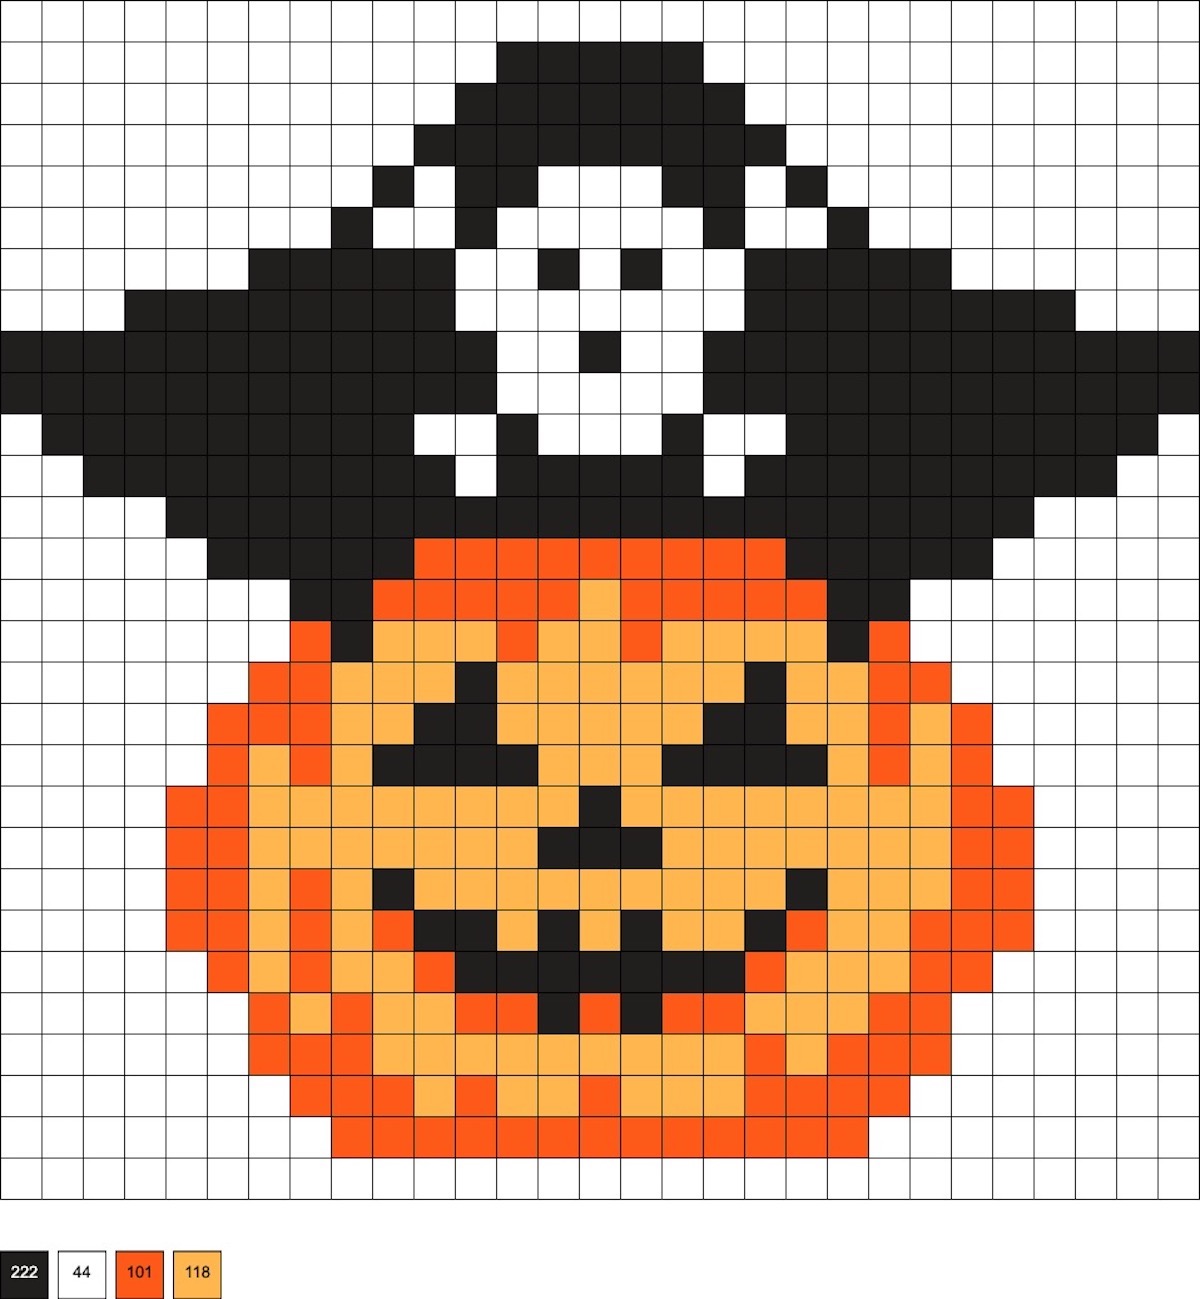 pirate pumpkin